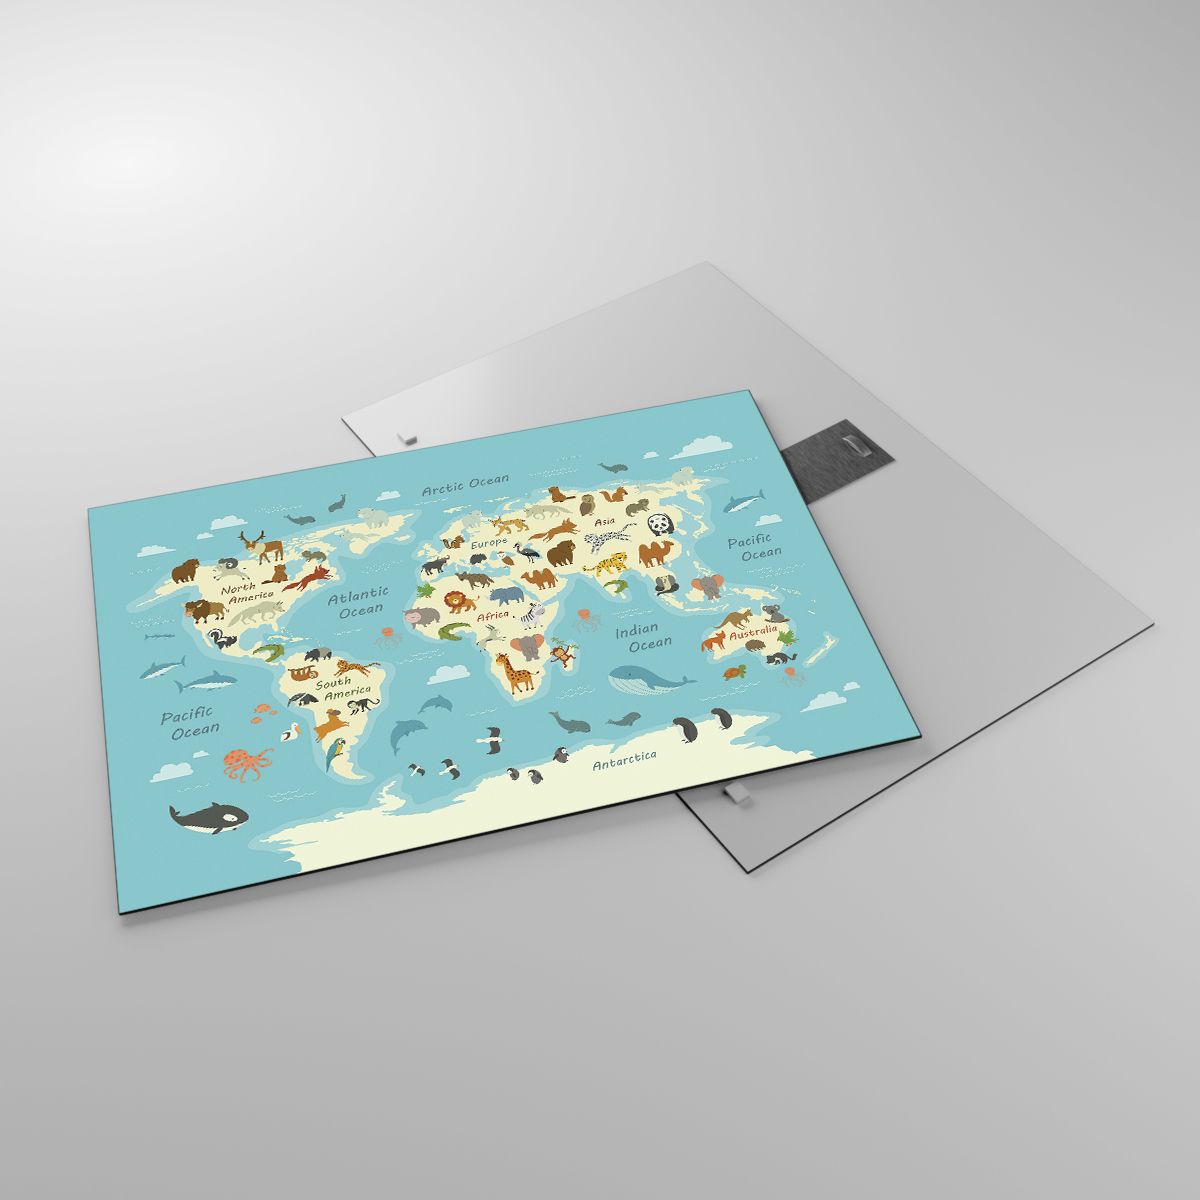 Glasbild Weltkarte, Glasbild Karte Mit Tieren, Glasbild Tiere, Glasbild Natur, Glasbild Für Kinder